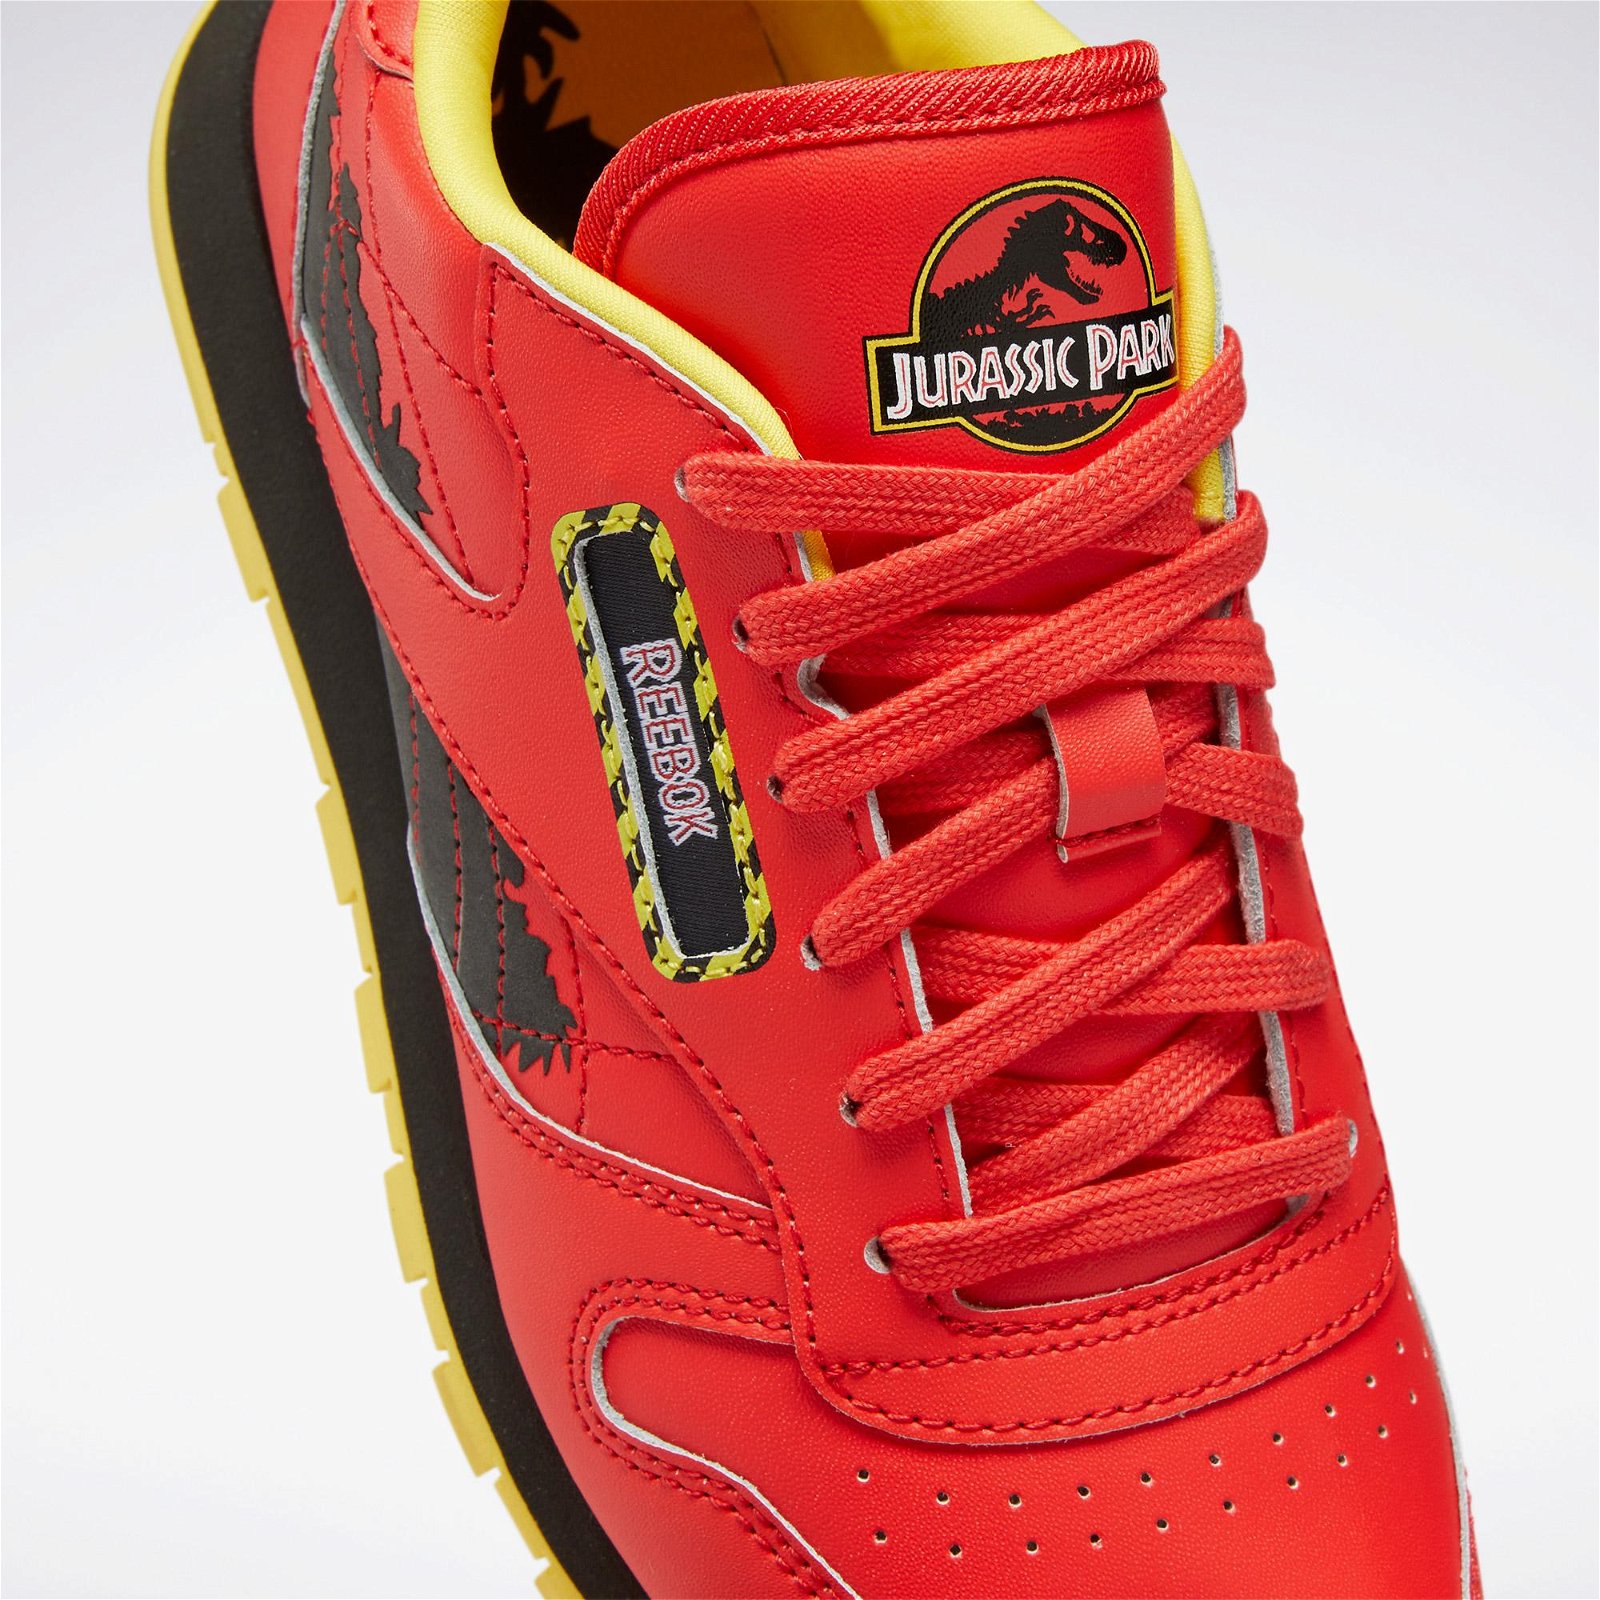 Reebok Jurassic Park CL Leather Kadın Kırmızı Spor Ayakkabı